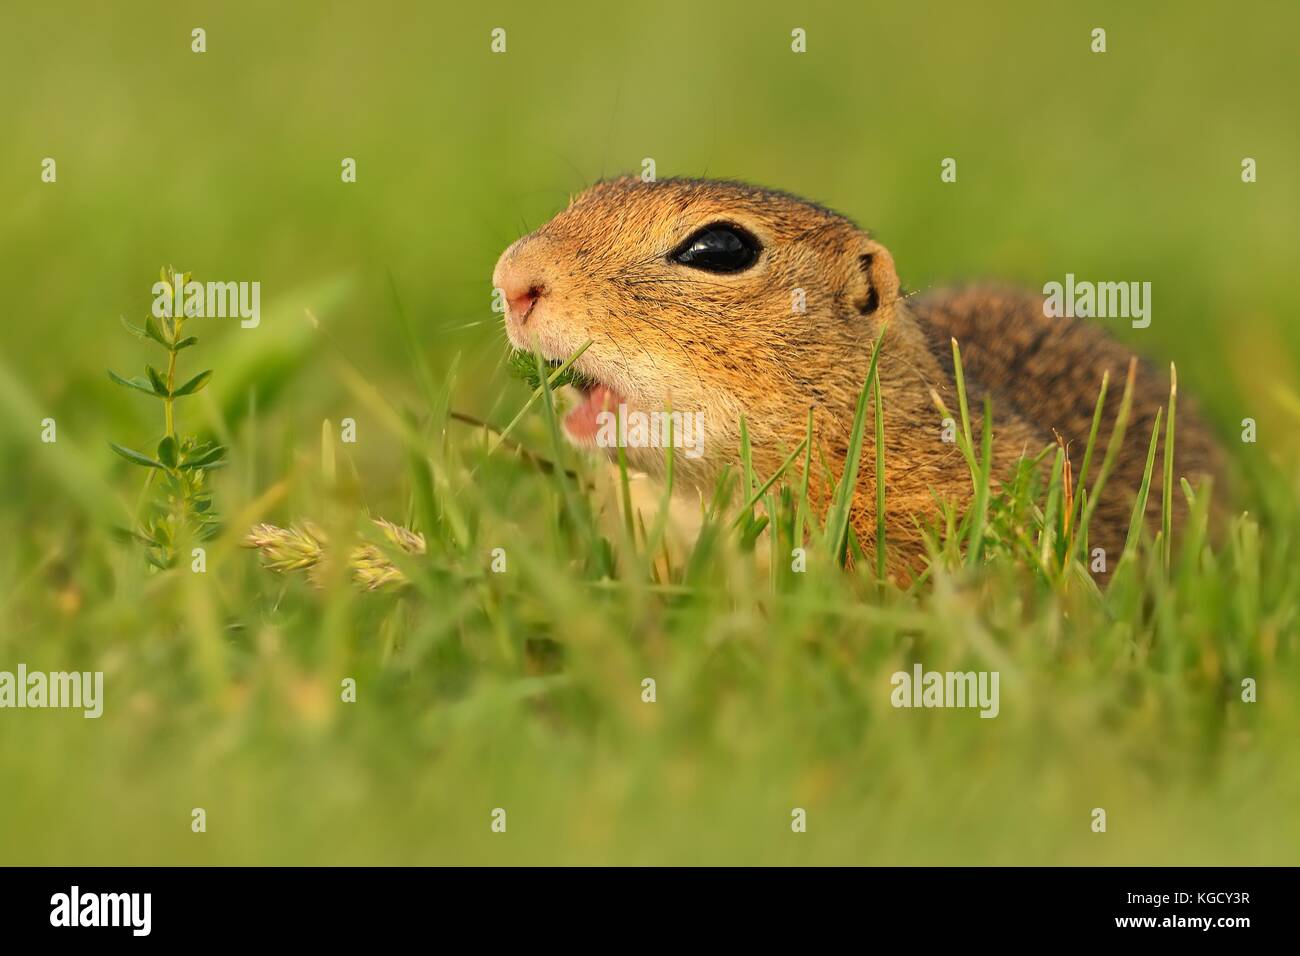 European ground squirrel - Spermophilus citellus in the grass, green background Stock Photo